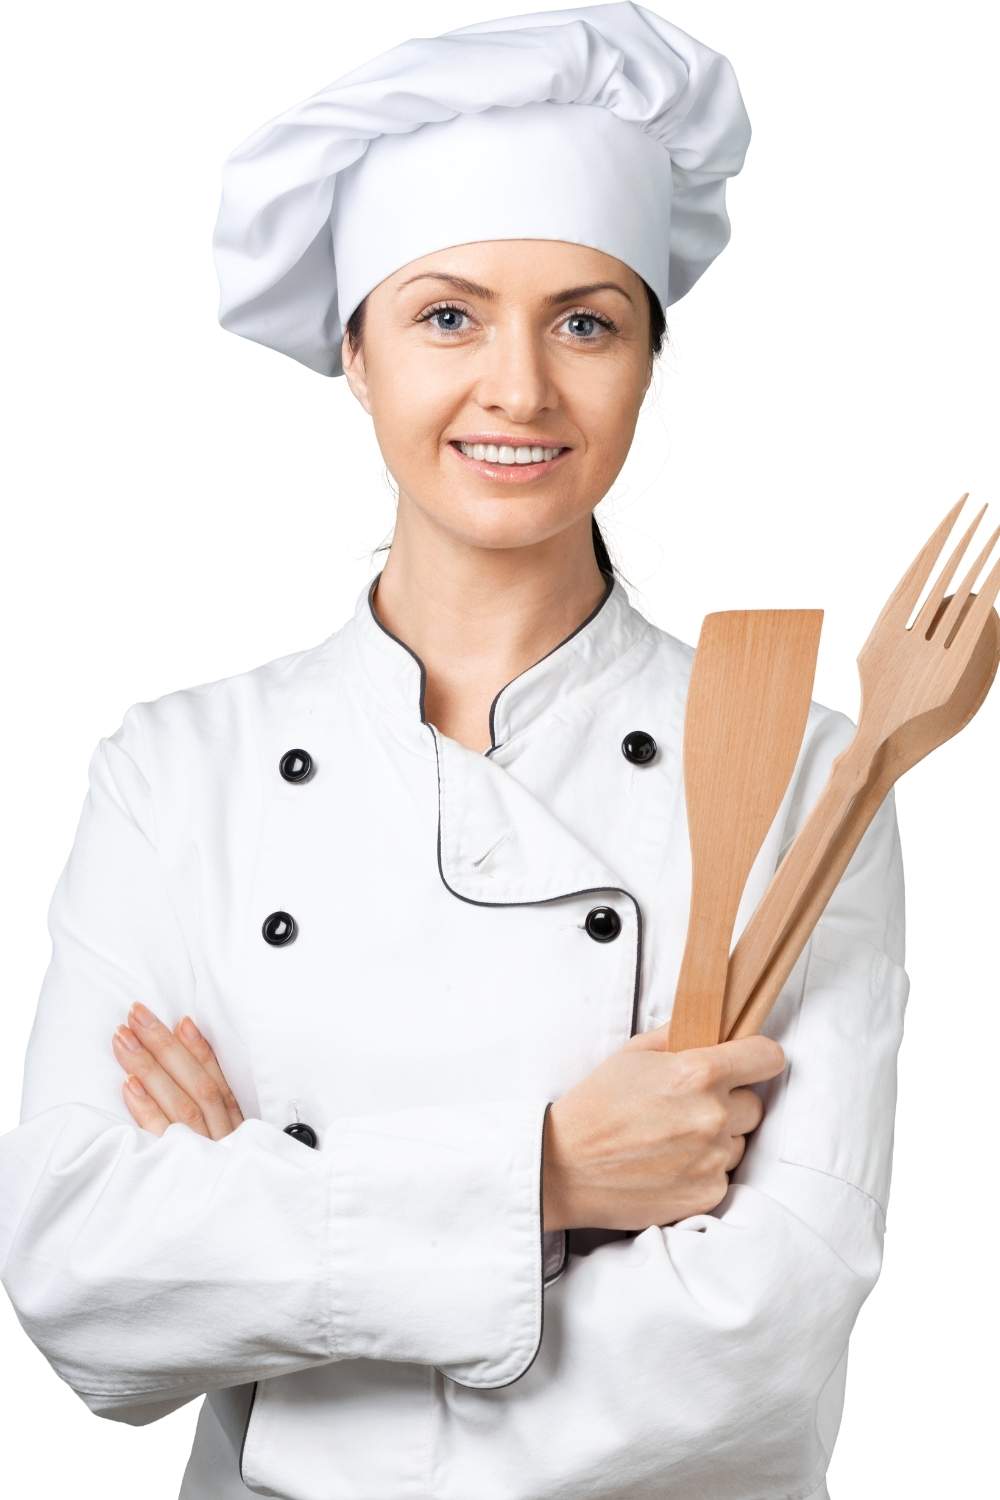 A mulher está usando um chapéu de chef e um jaleco branco, segurando utensílios de madeira.